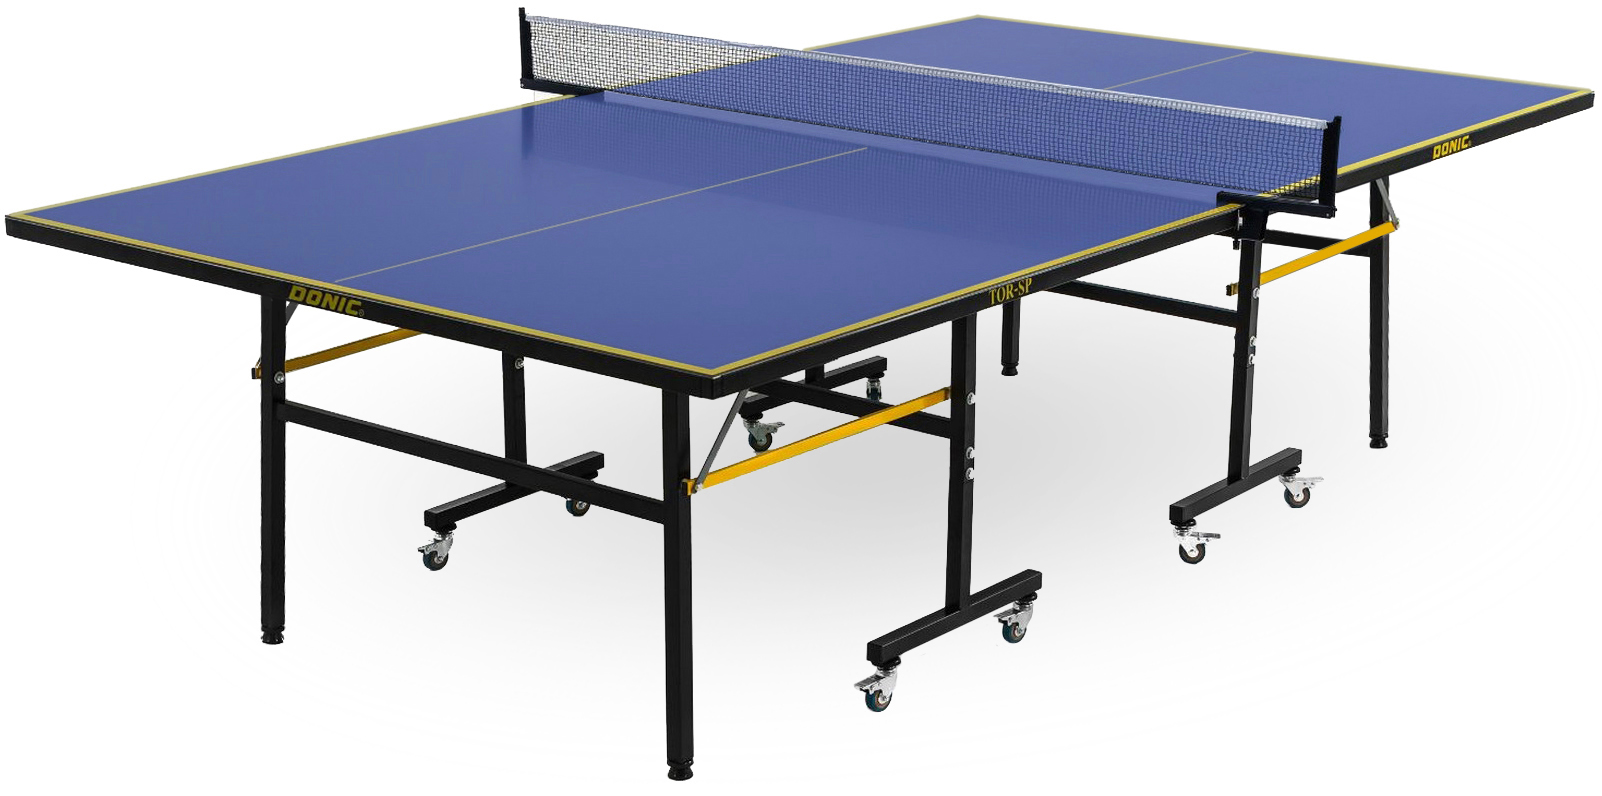 Теннисный стол Unix line Outdoor - 6 мм. Антивандальный теннисный стол Donic Galaxy синий. Футболка стол теннис. Теннисный стол unix